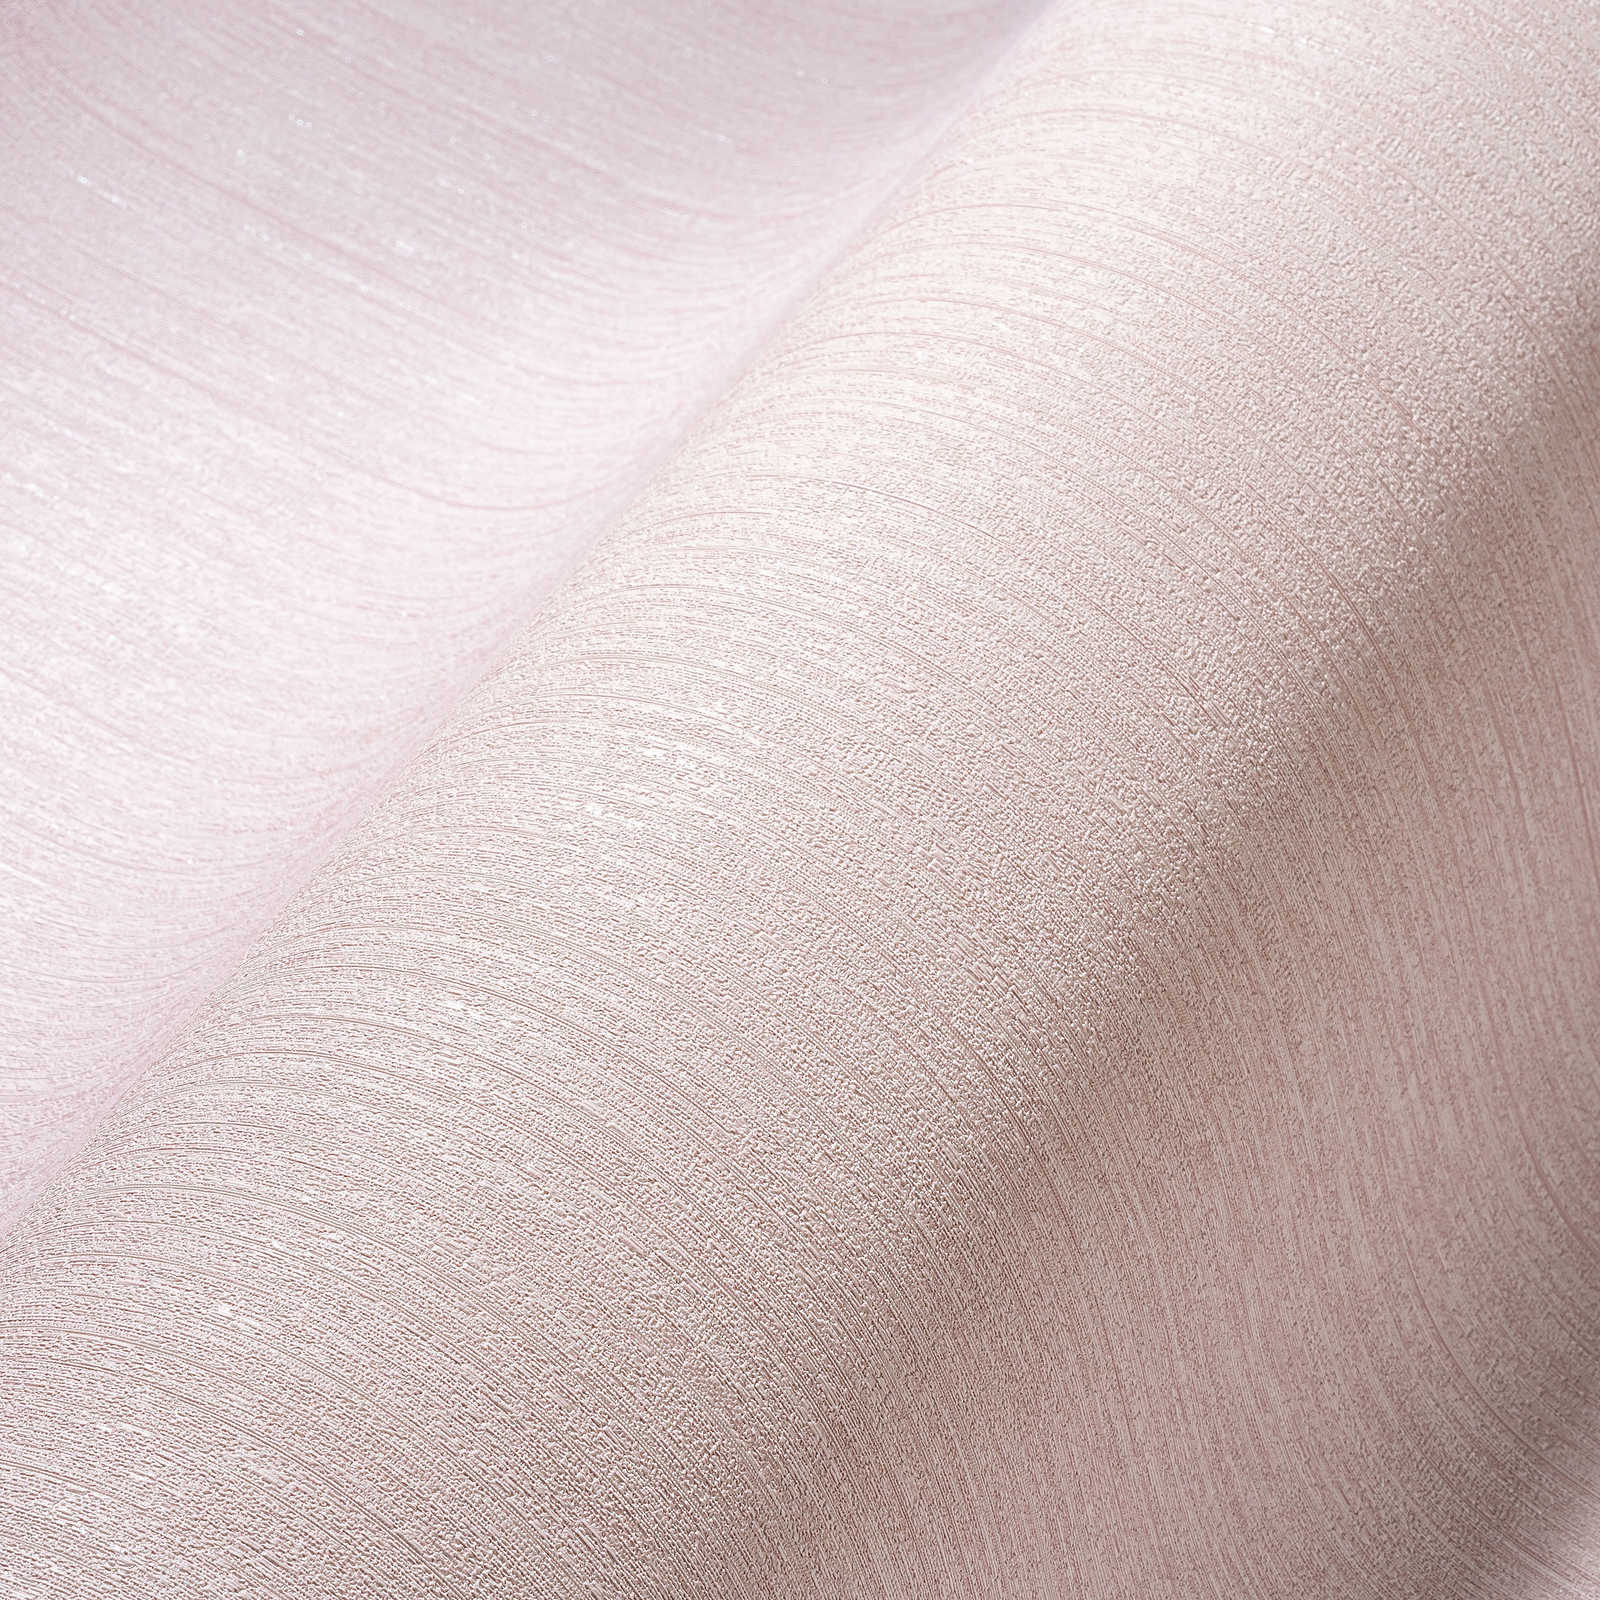             Carta da parati rosa in tessuto non tessuto di seta opaco, tinta unita con effetto struttura
        